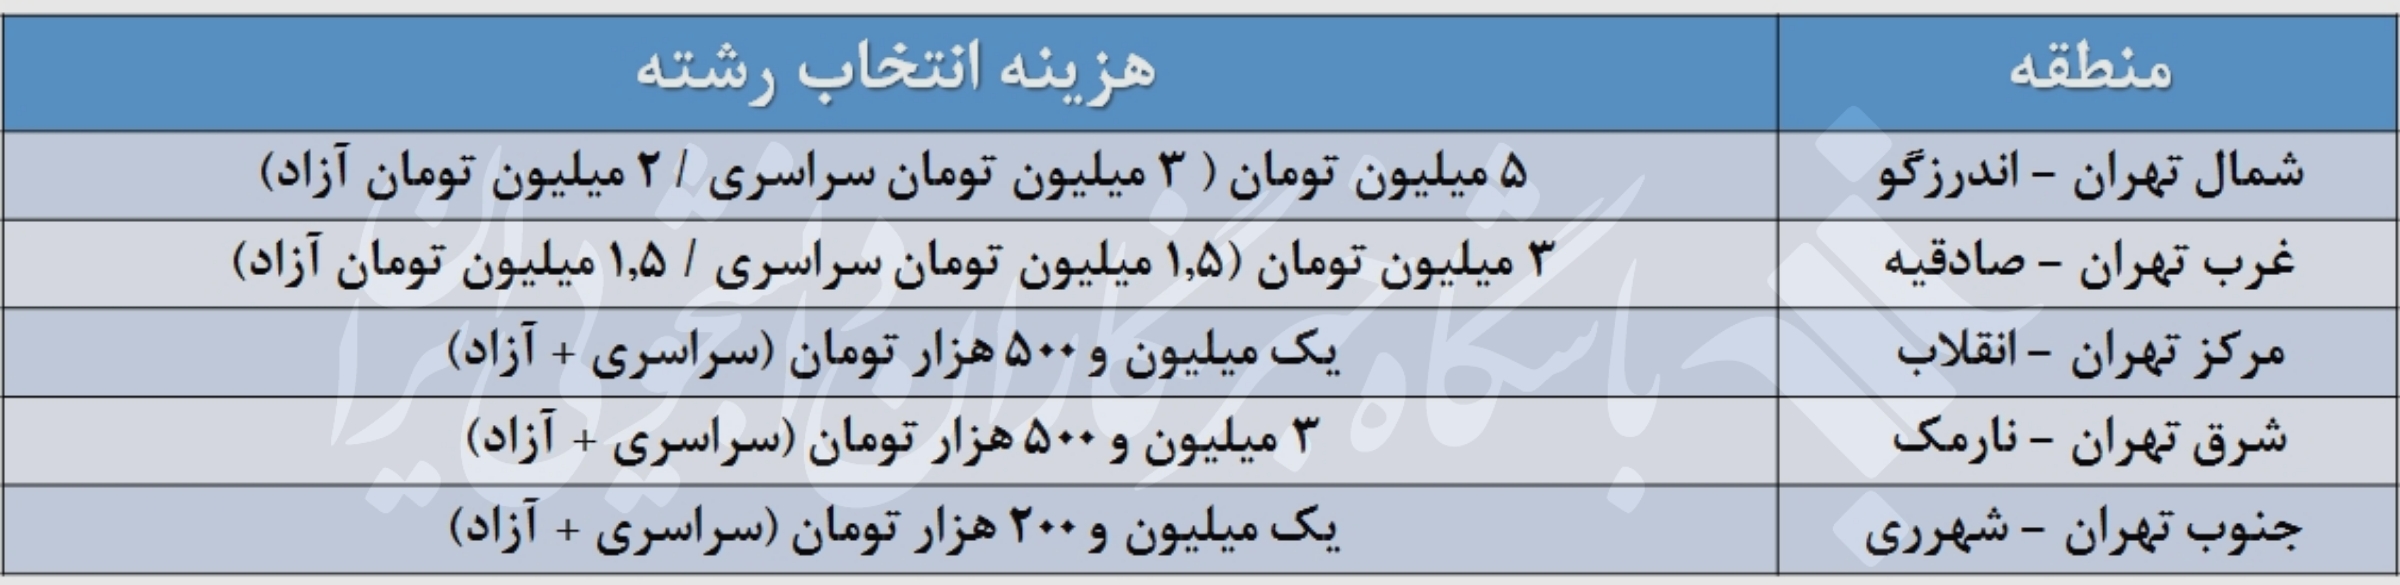 هزینه انتخاب رشته در مناطق مختلف تهران چقدر است؟ + جدول